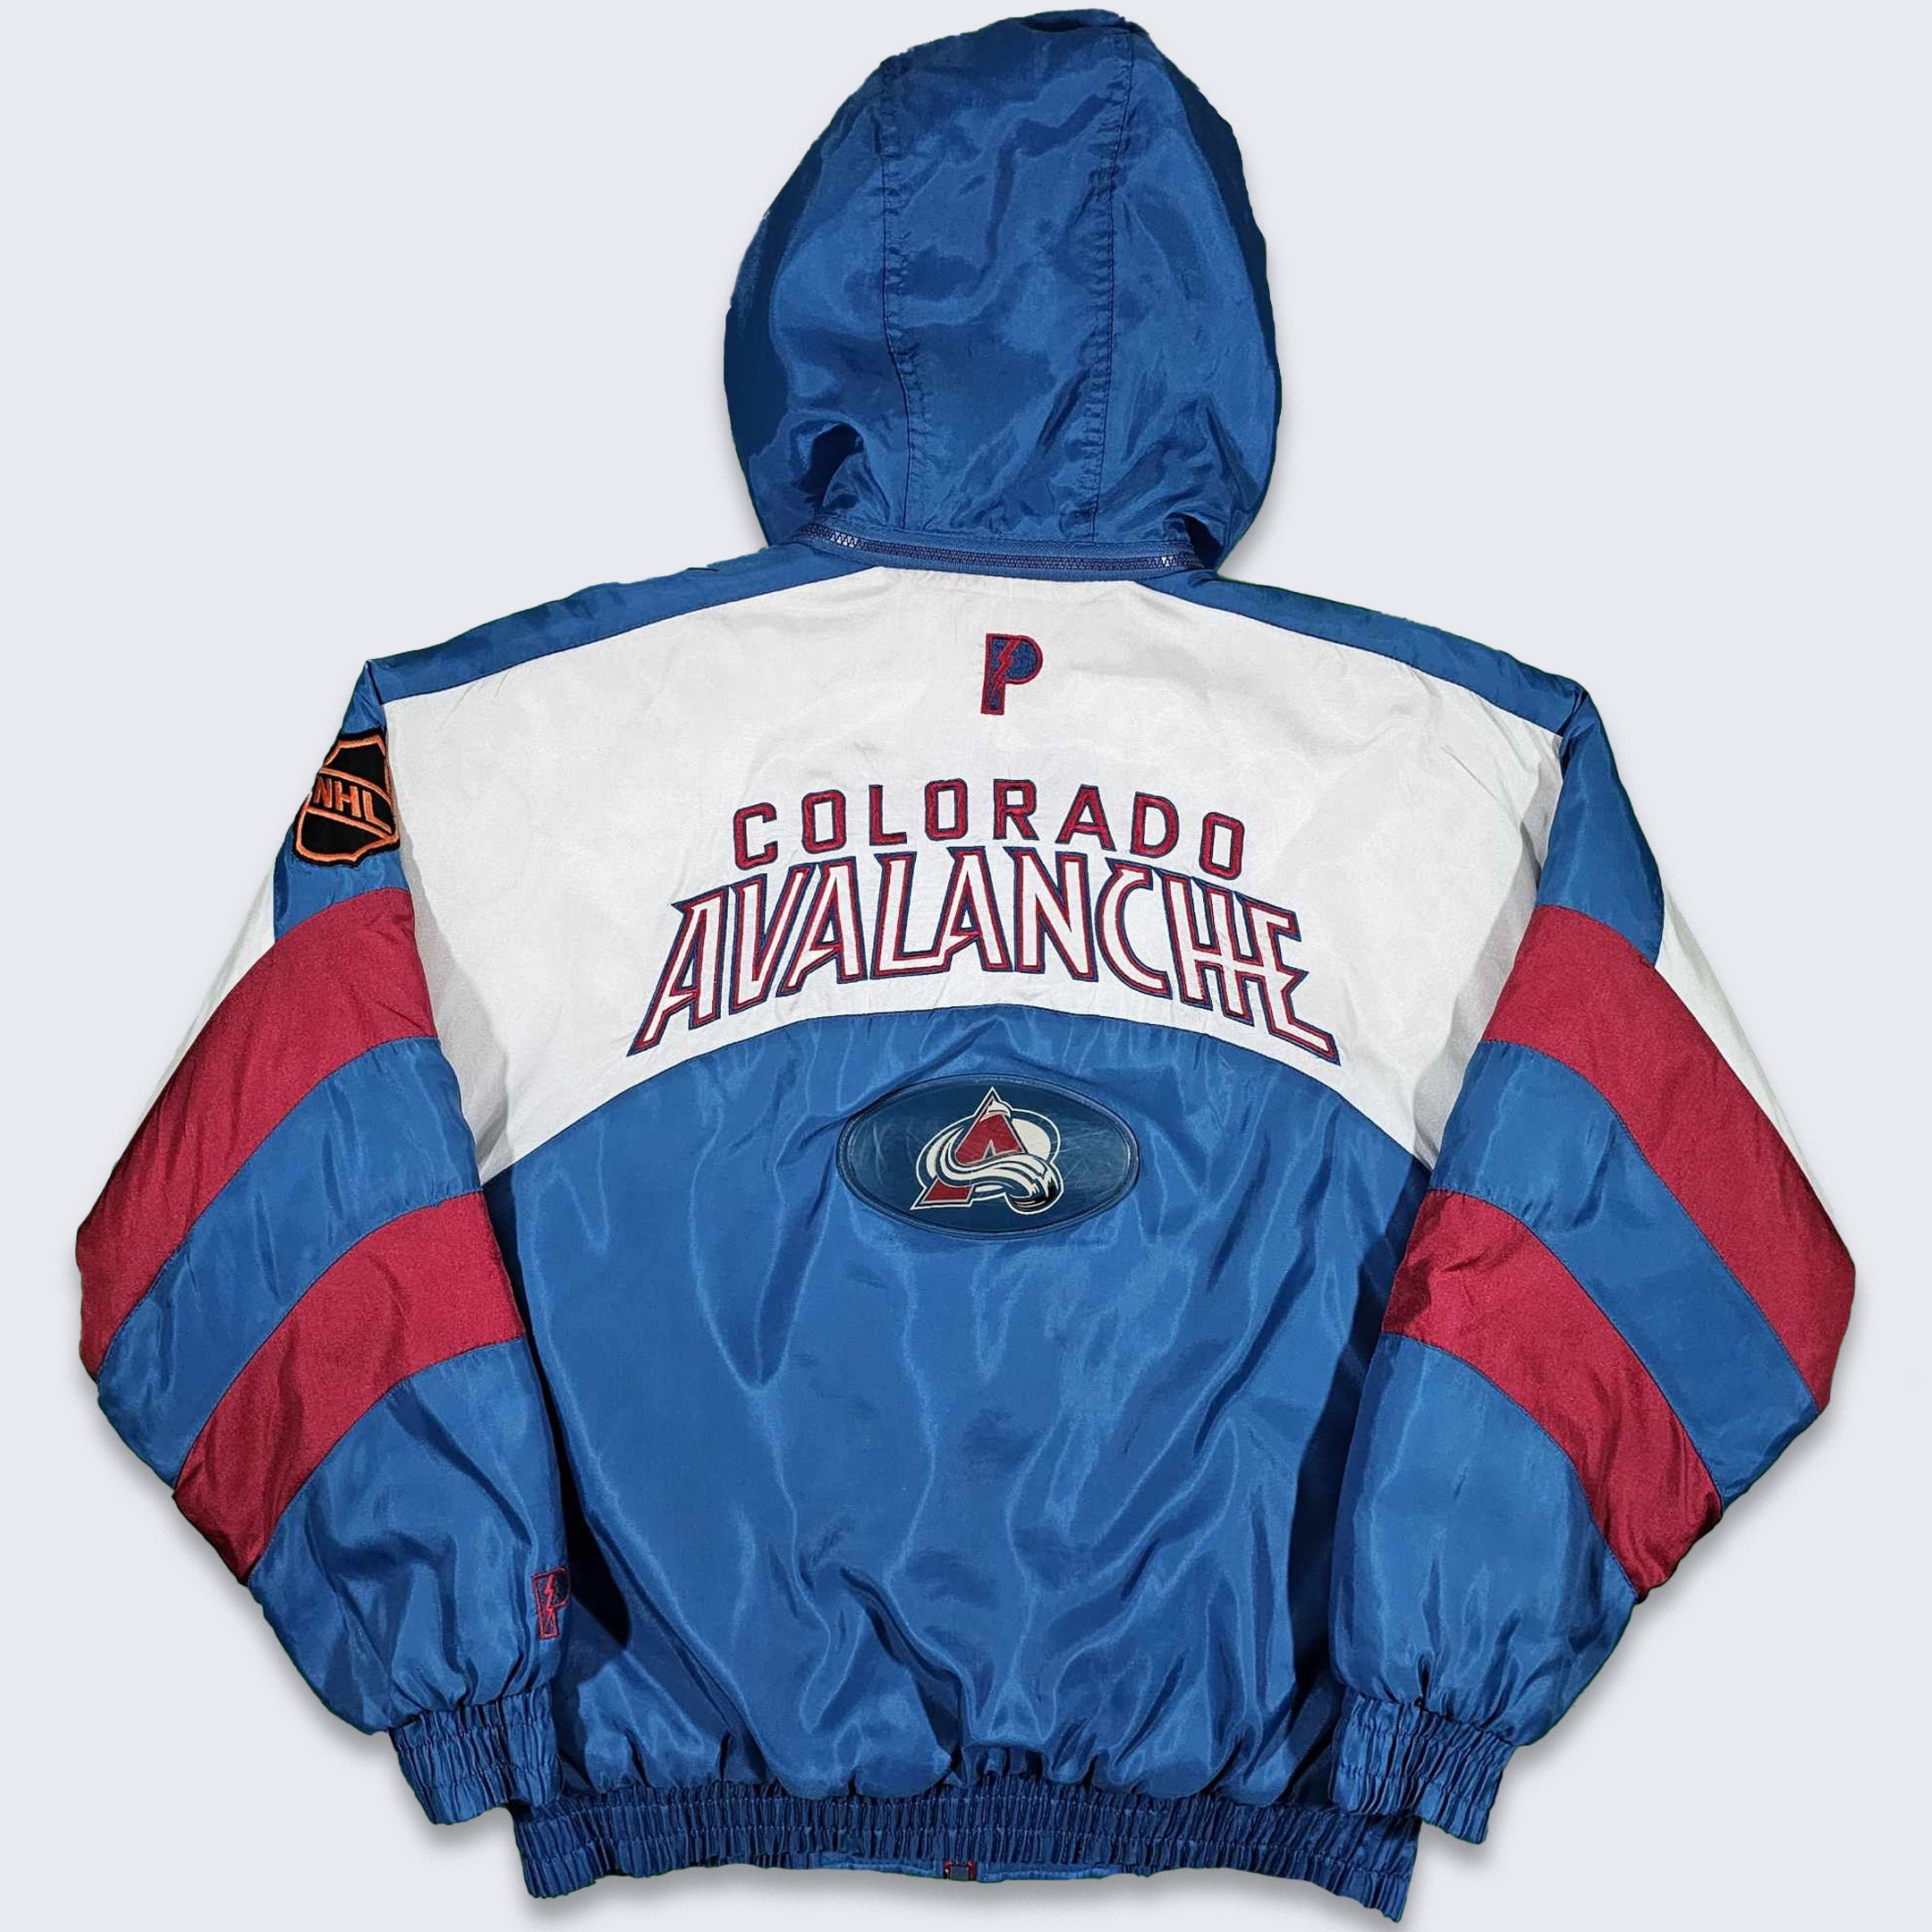 Colorado Avalanche BIGFOOT Vintage NHL Crewneck Sweatshirt Hoodie